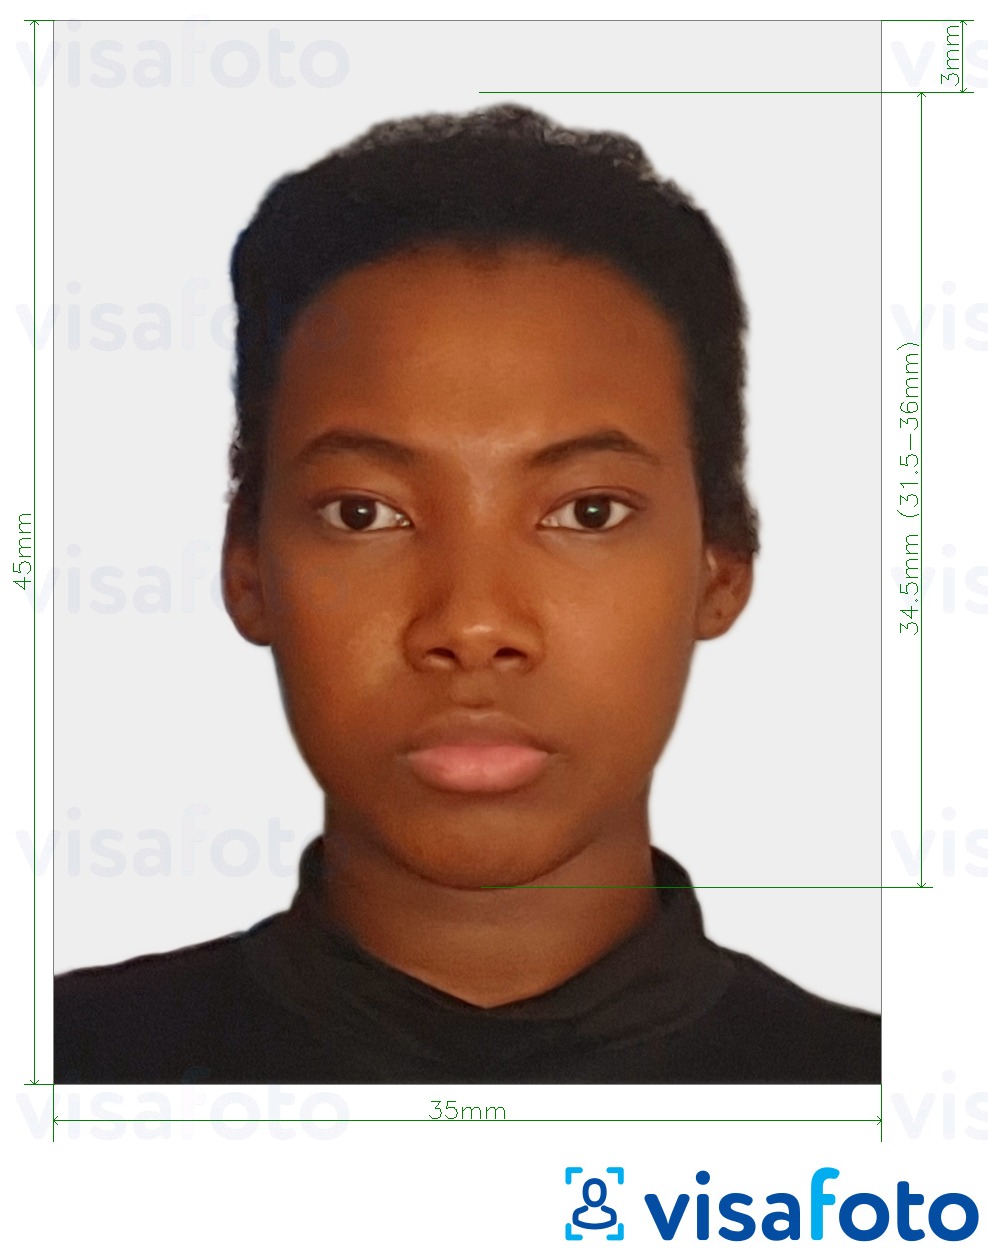  Togo pass 4.5x3.5 cm (45x35mm) fotonäidis koos täpse infoga mõõtude kohta.